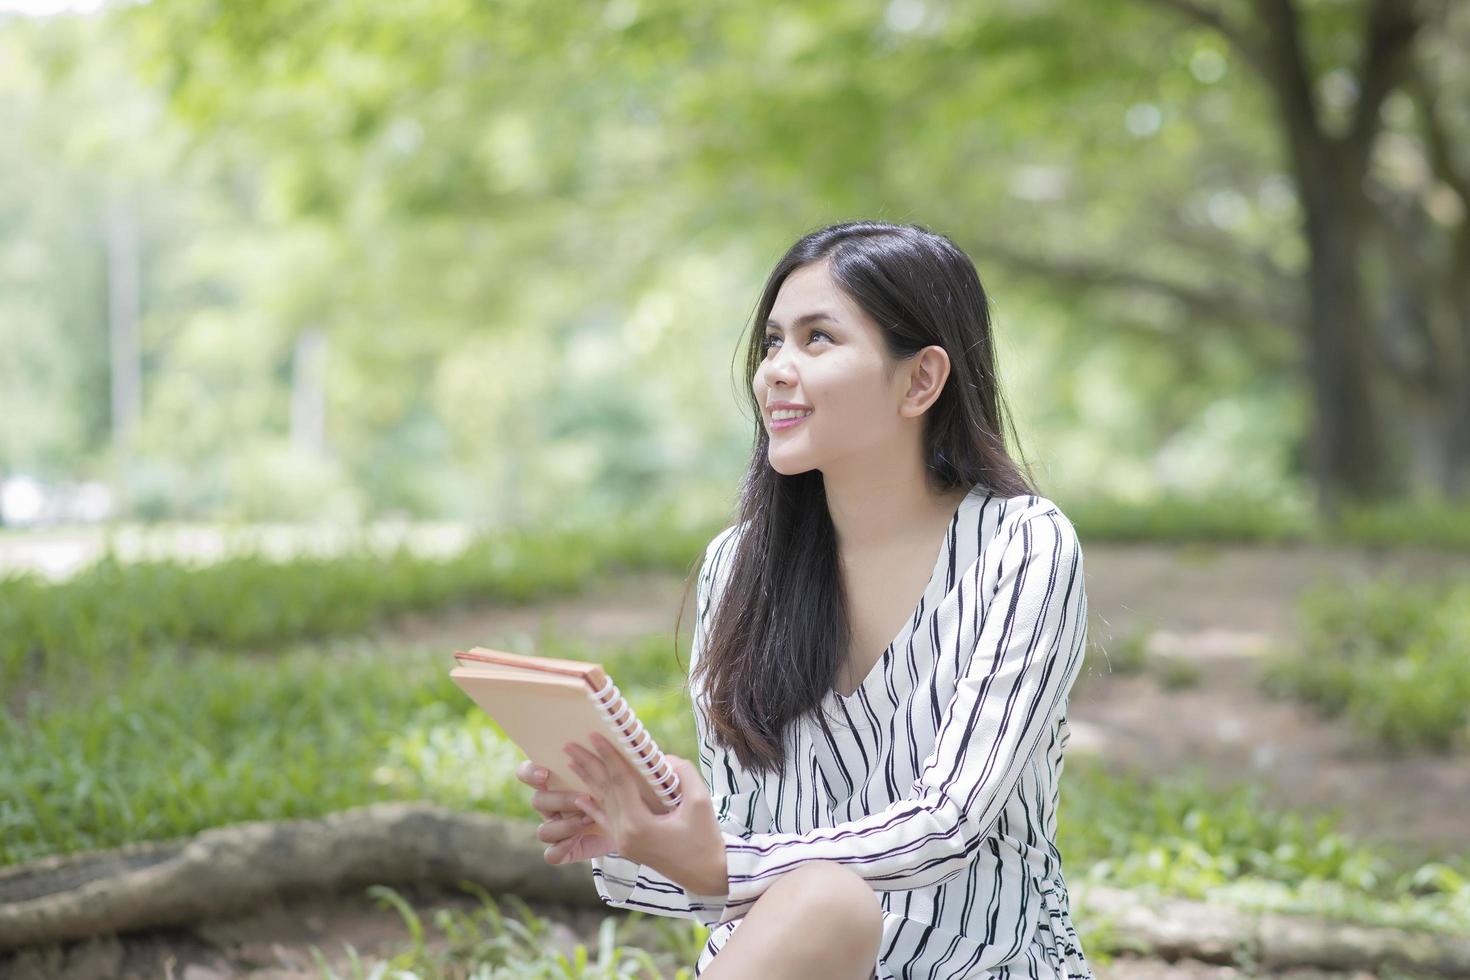 donna attraente che legge un libro nel parco foto